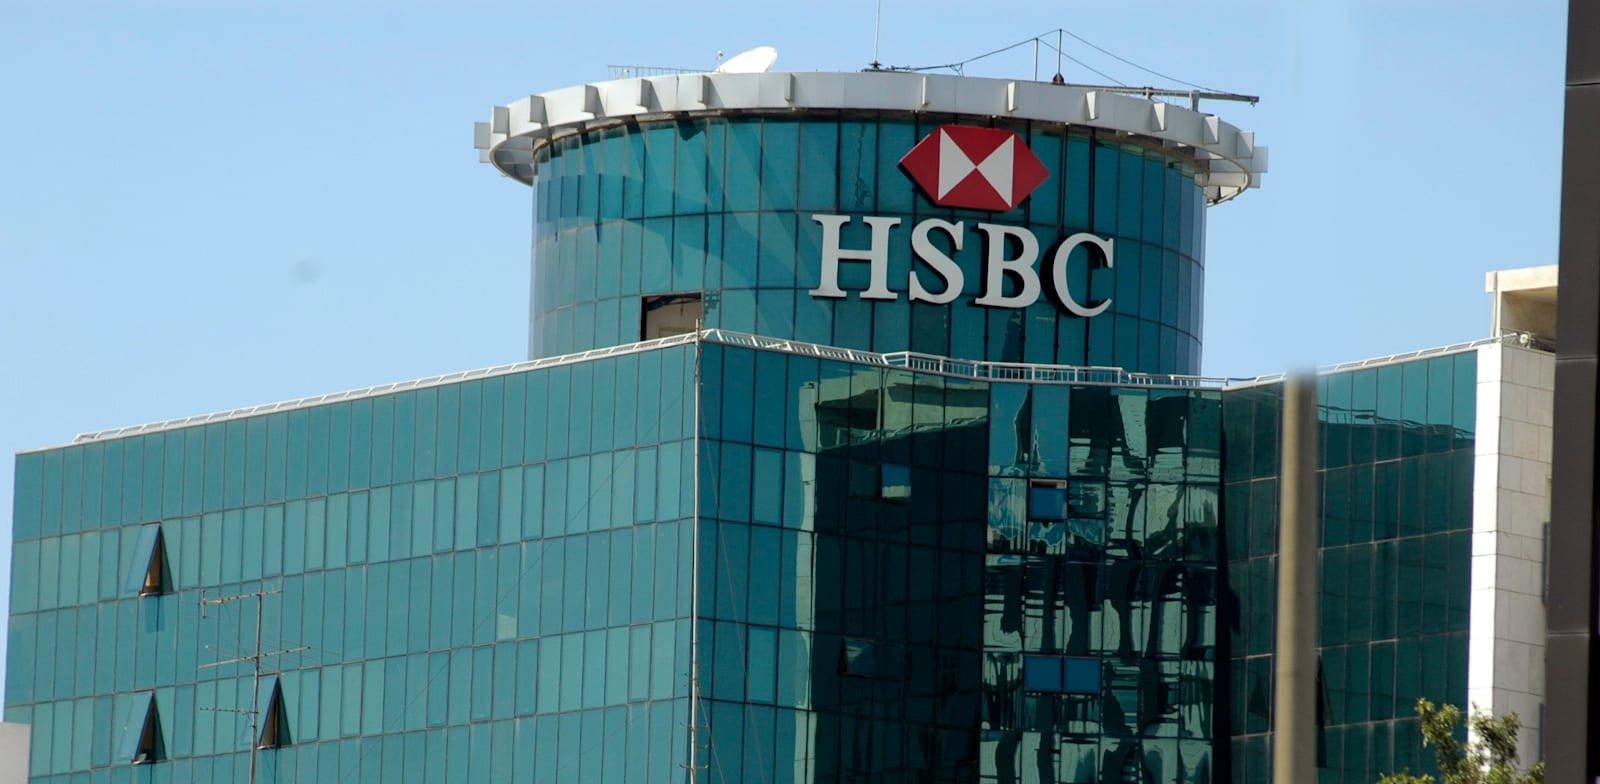 בנק HSBC / צילום: תמר מצפי